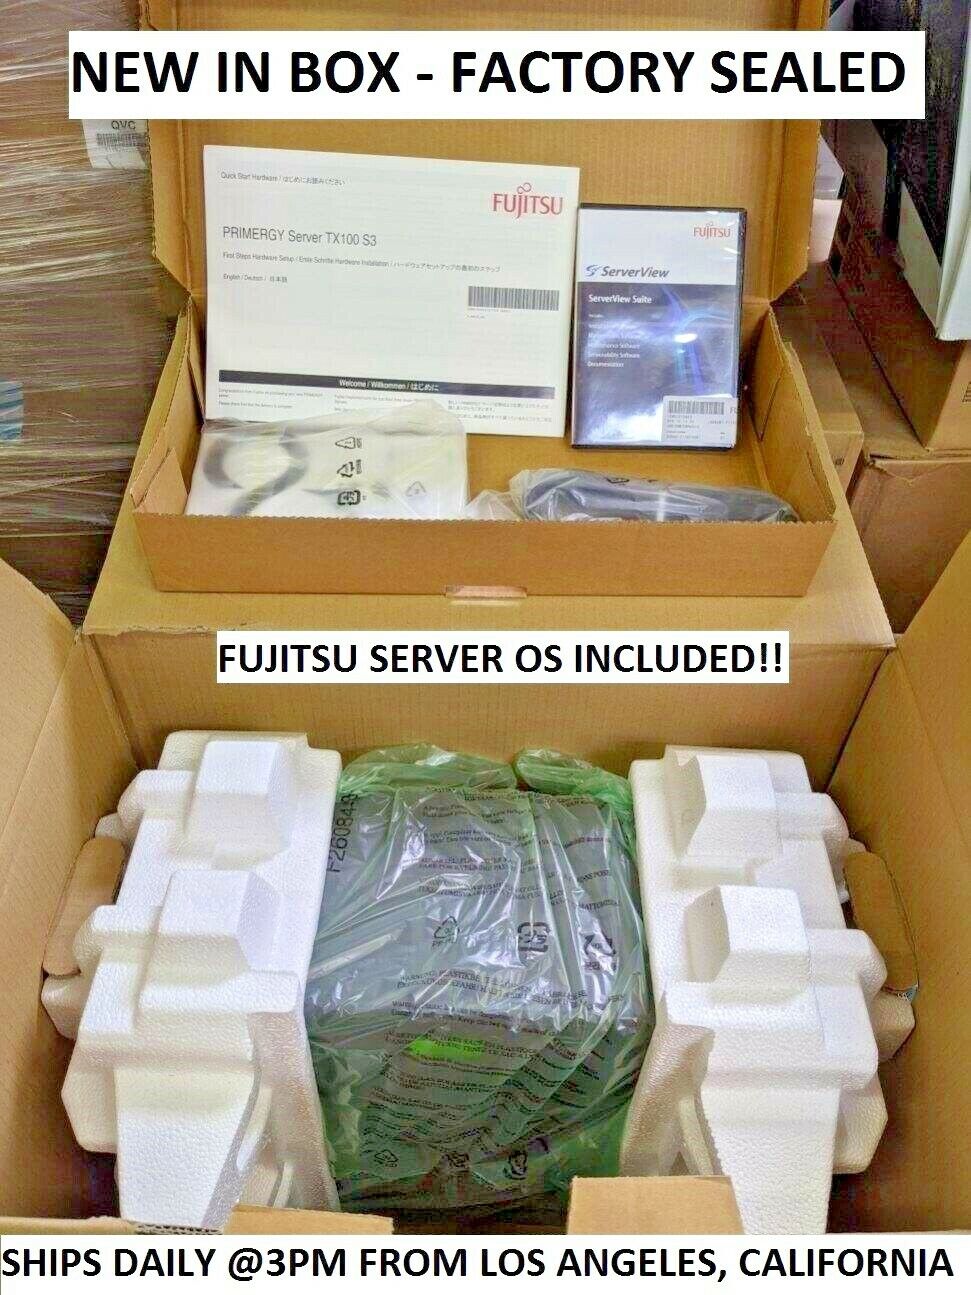 NEW Fujitsu TX100 S3 Server Intel Xeon E3-1220v2 3.1GHz 4GB 1TB NIB RAID 0,1,10